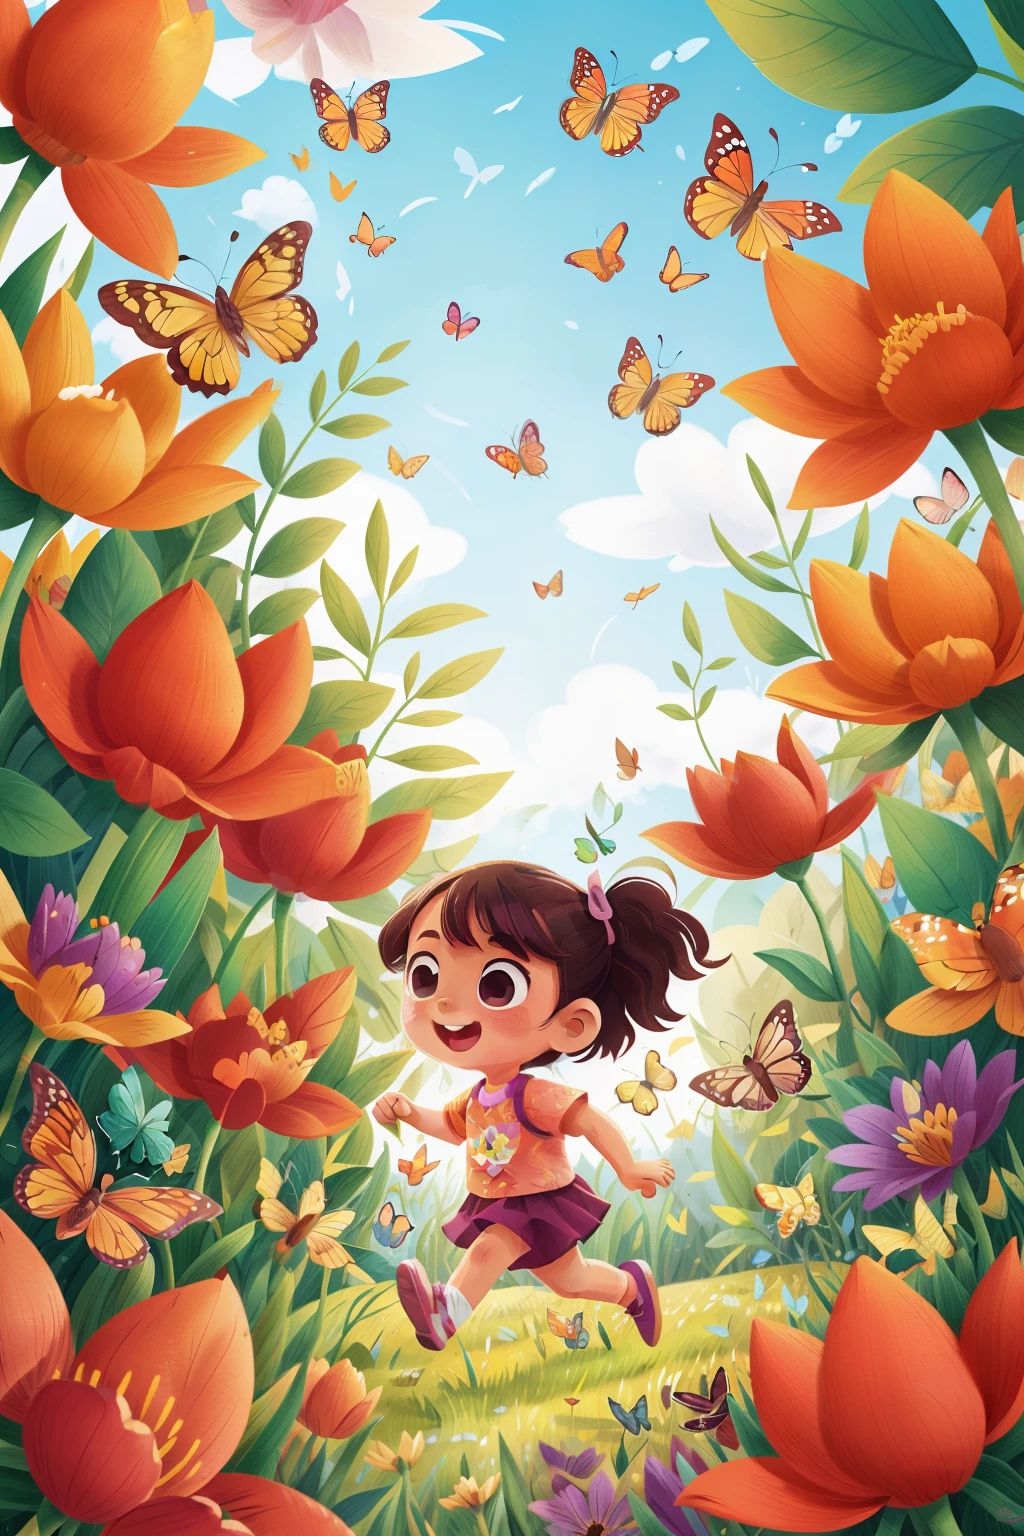 生成一个小女孩在花丛中快乐奔跑的图像, 被各种颜色的蝴蝶包围着